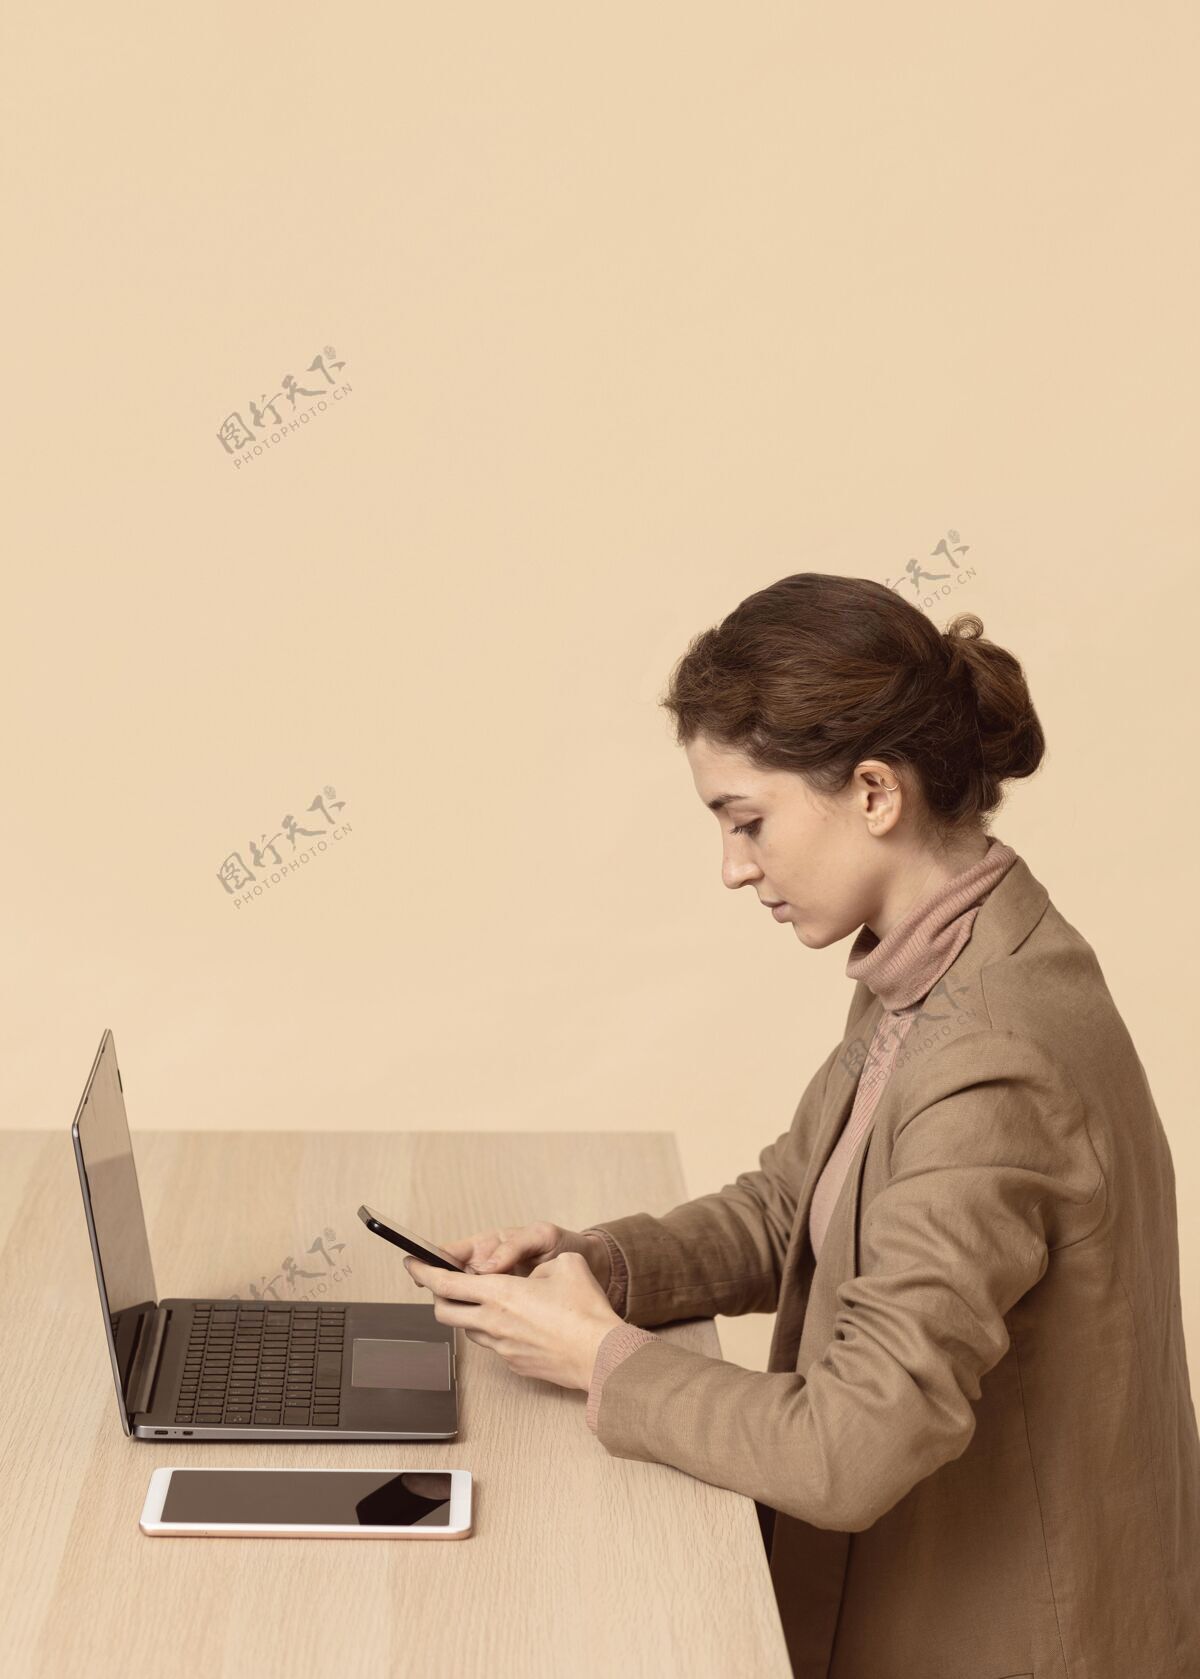 设备坐在笔记本电脑旁使用智能手机的女人模特数码姿势